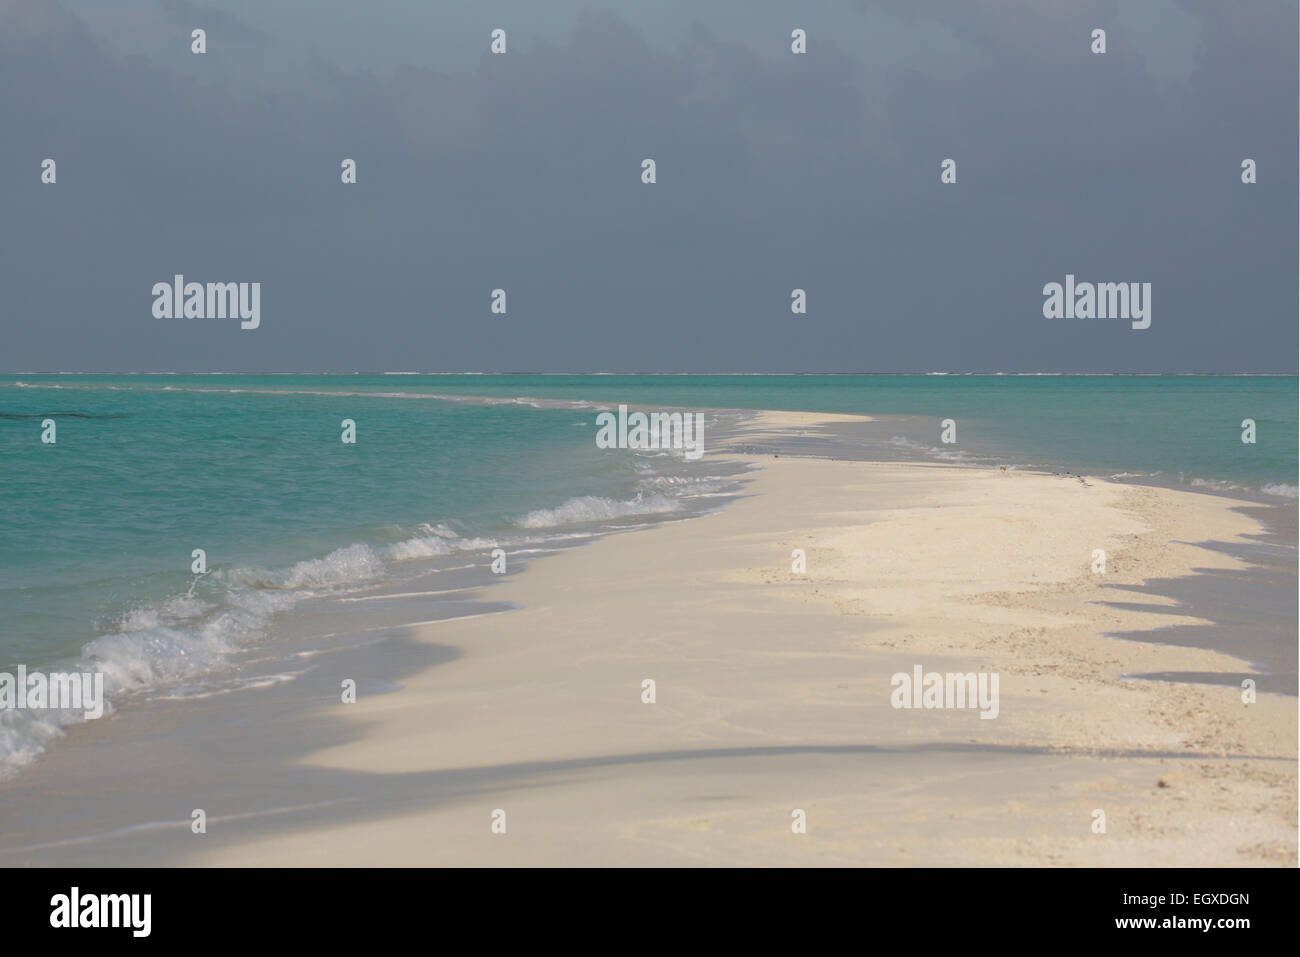 Eine sandigen Landzunge grenzt beidseitig am türkisblauen Meer auf einer Insel auf den Malediven Stockfoto